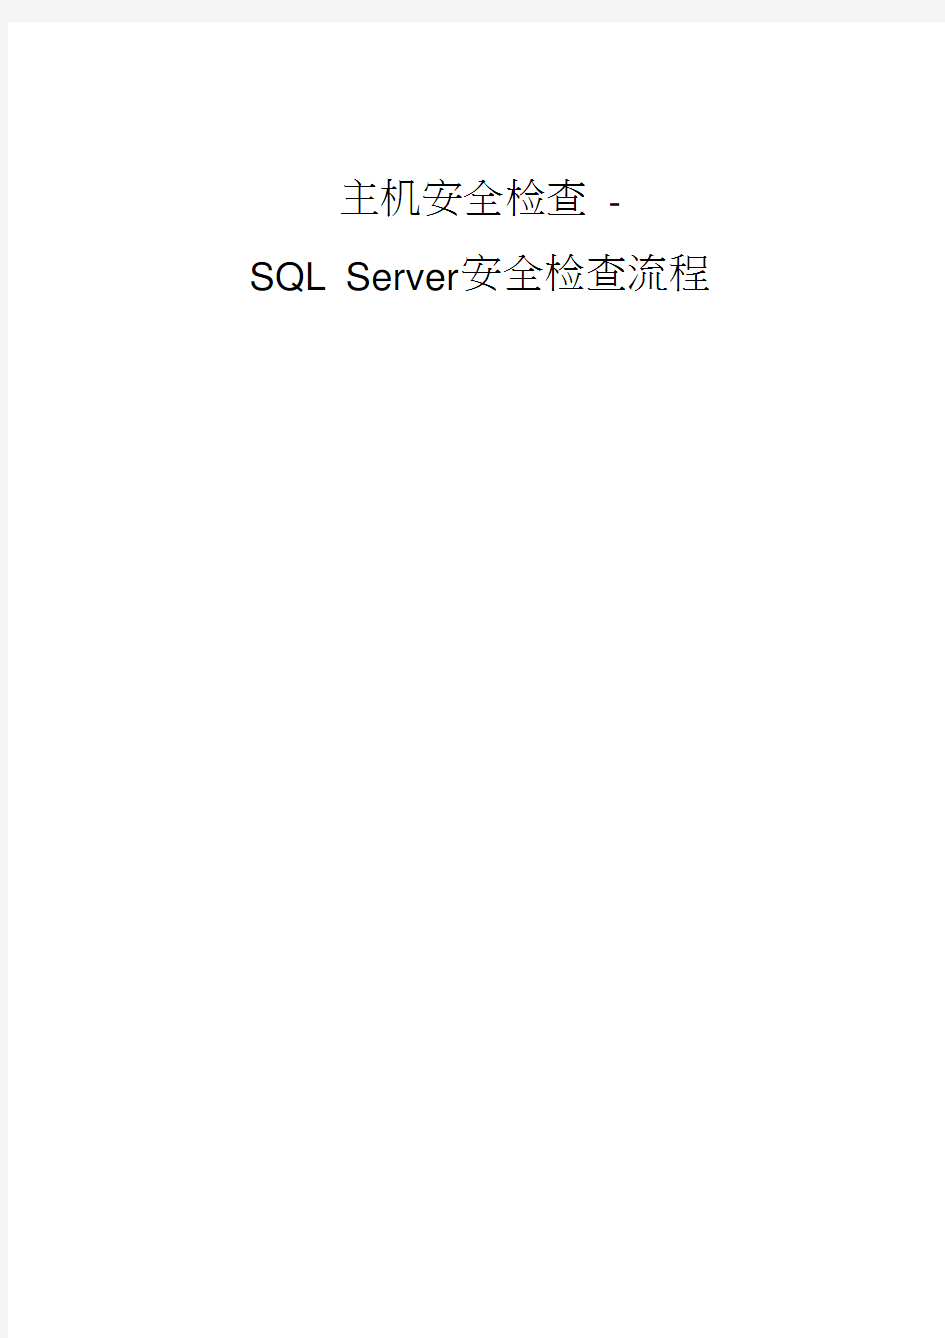 数据库安全评估检查表_sql_server